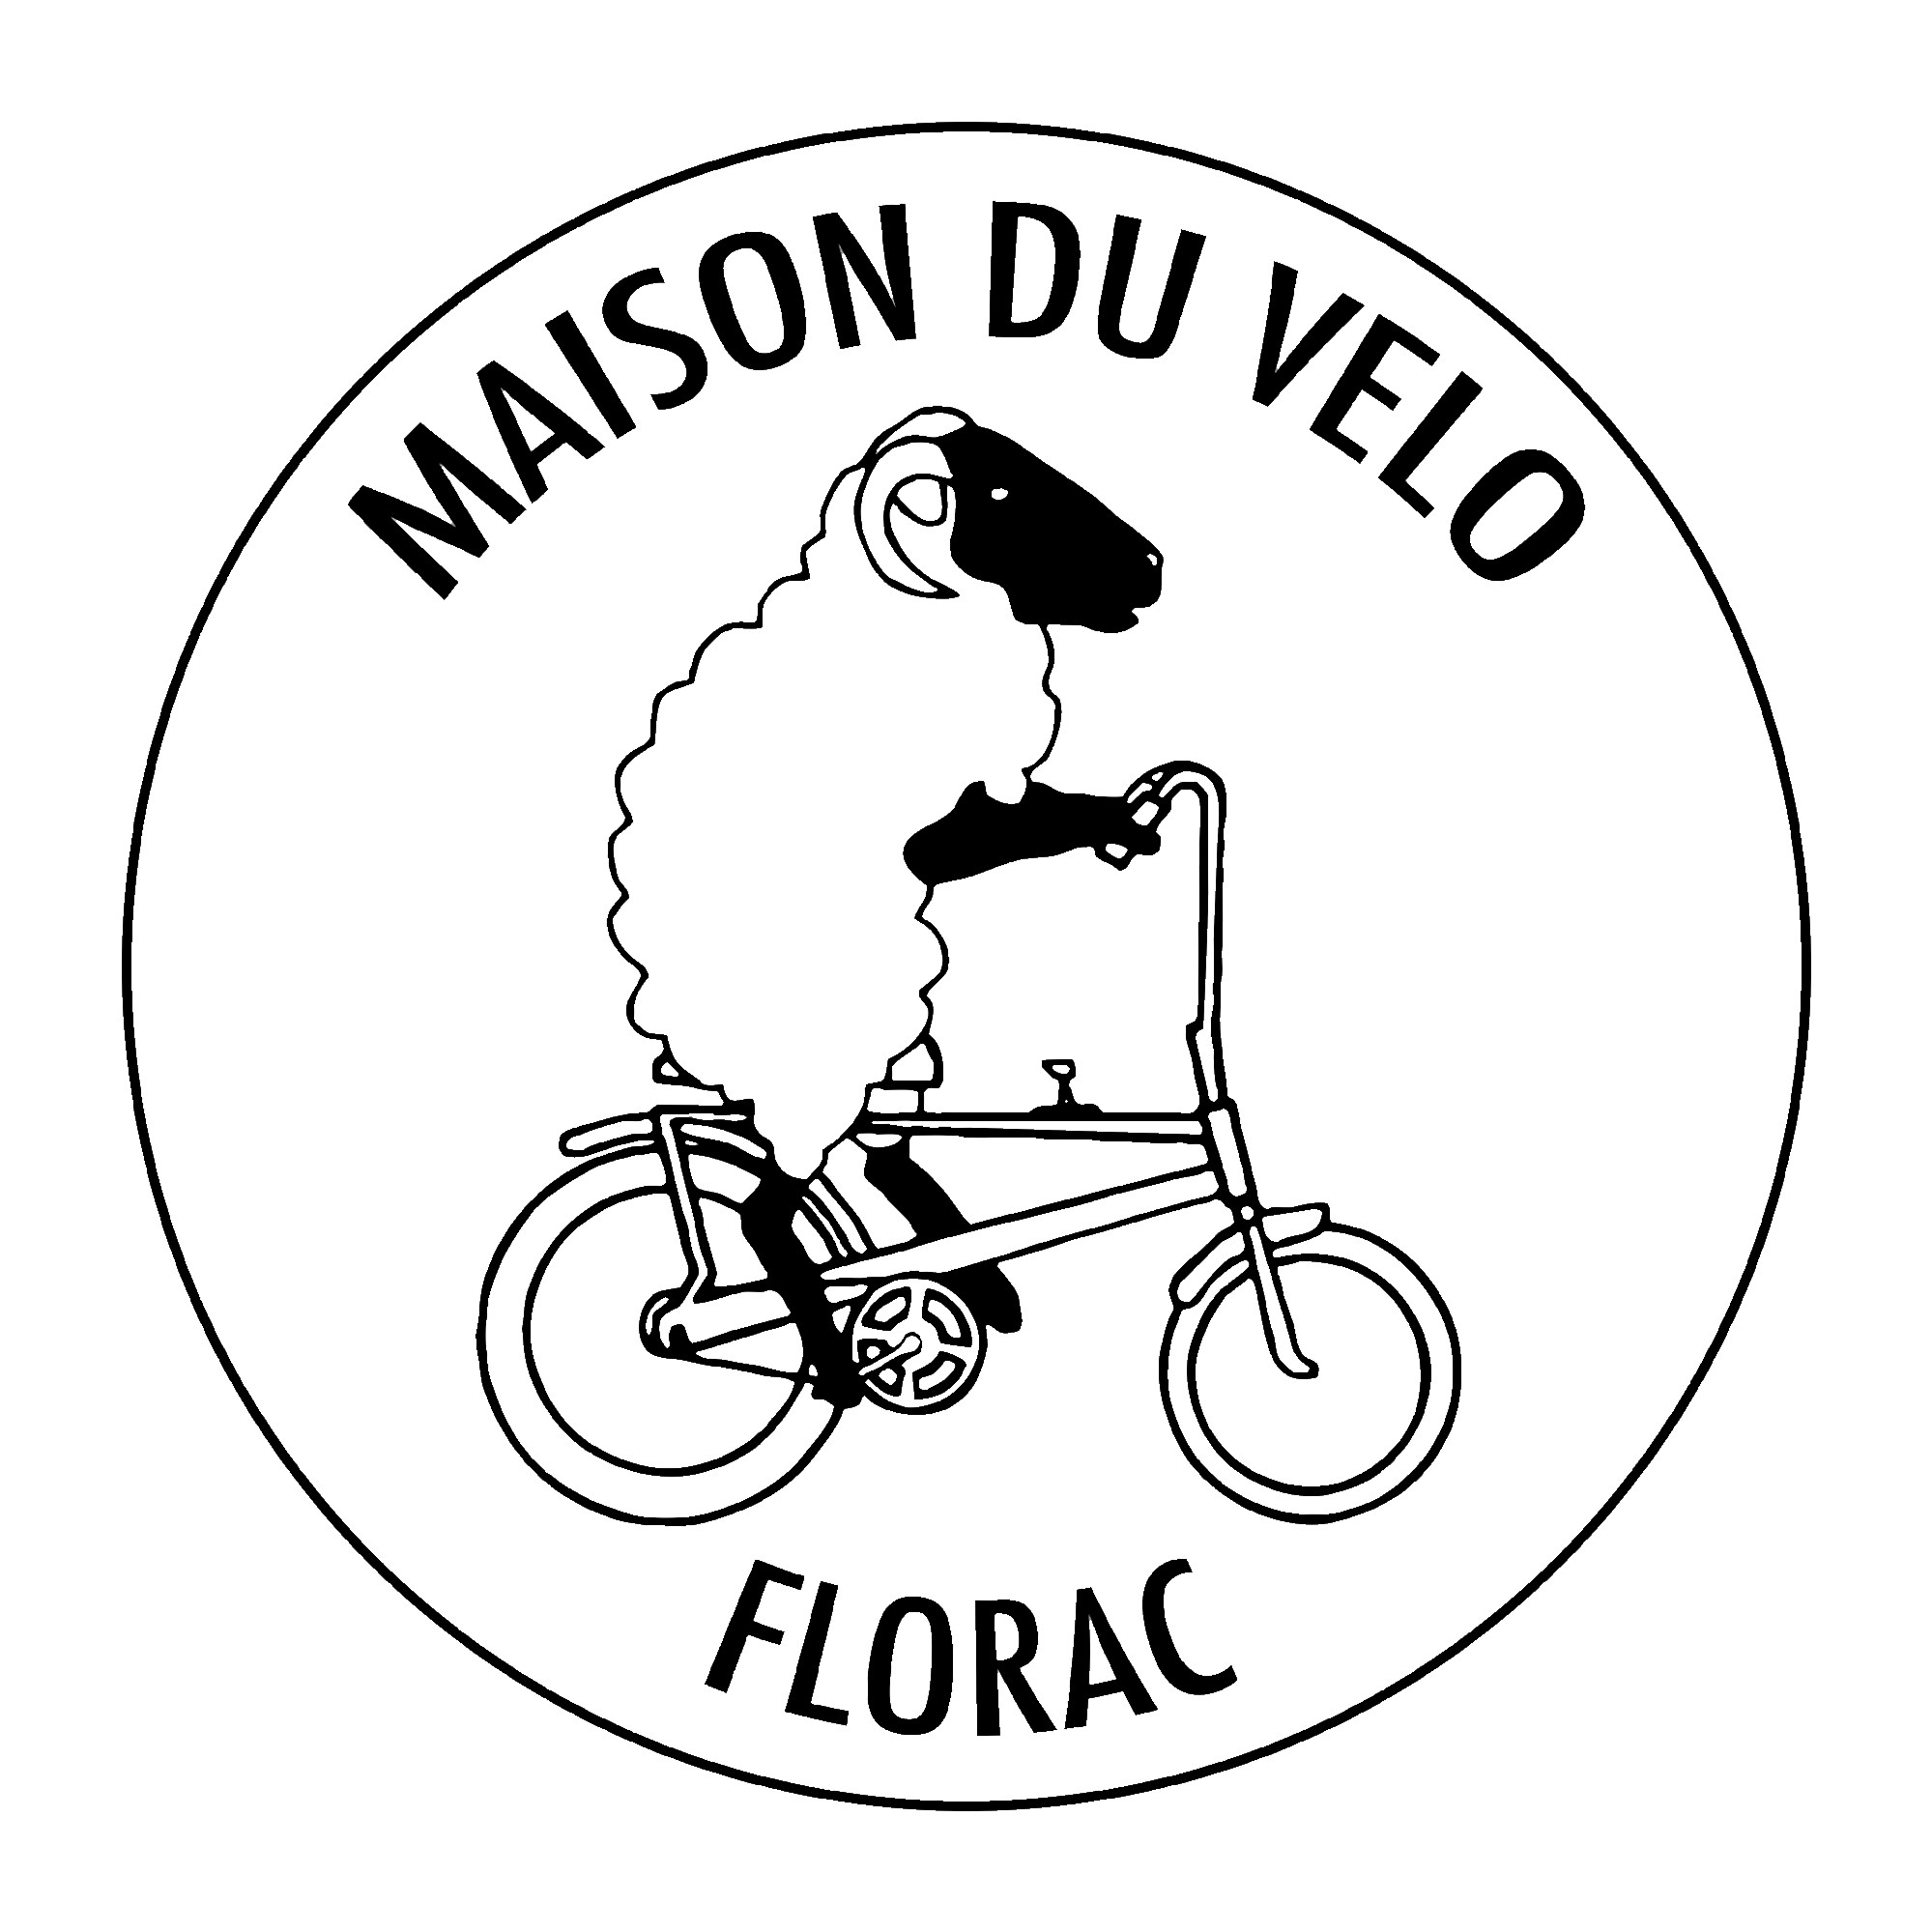 En partenariat avec la maison du vélo Florac